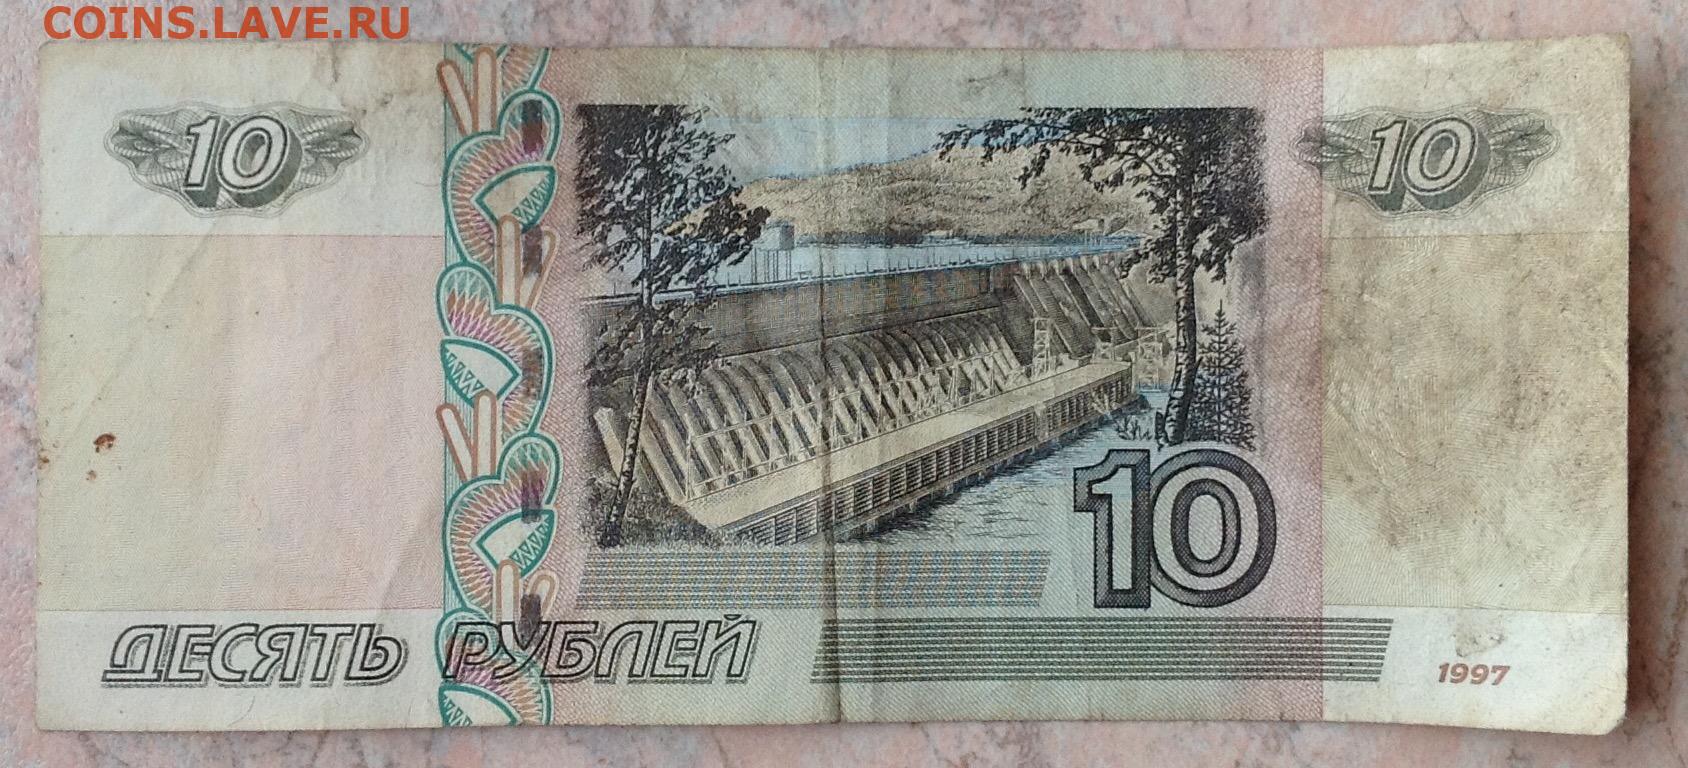 Доллары в рубли 2004. 10 Рублей ЦЦ фф. 100 Руб 2004 смещение.